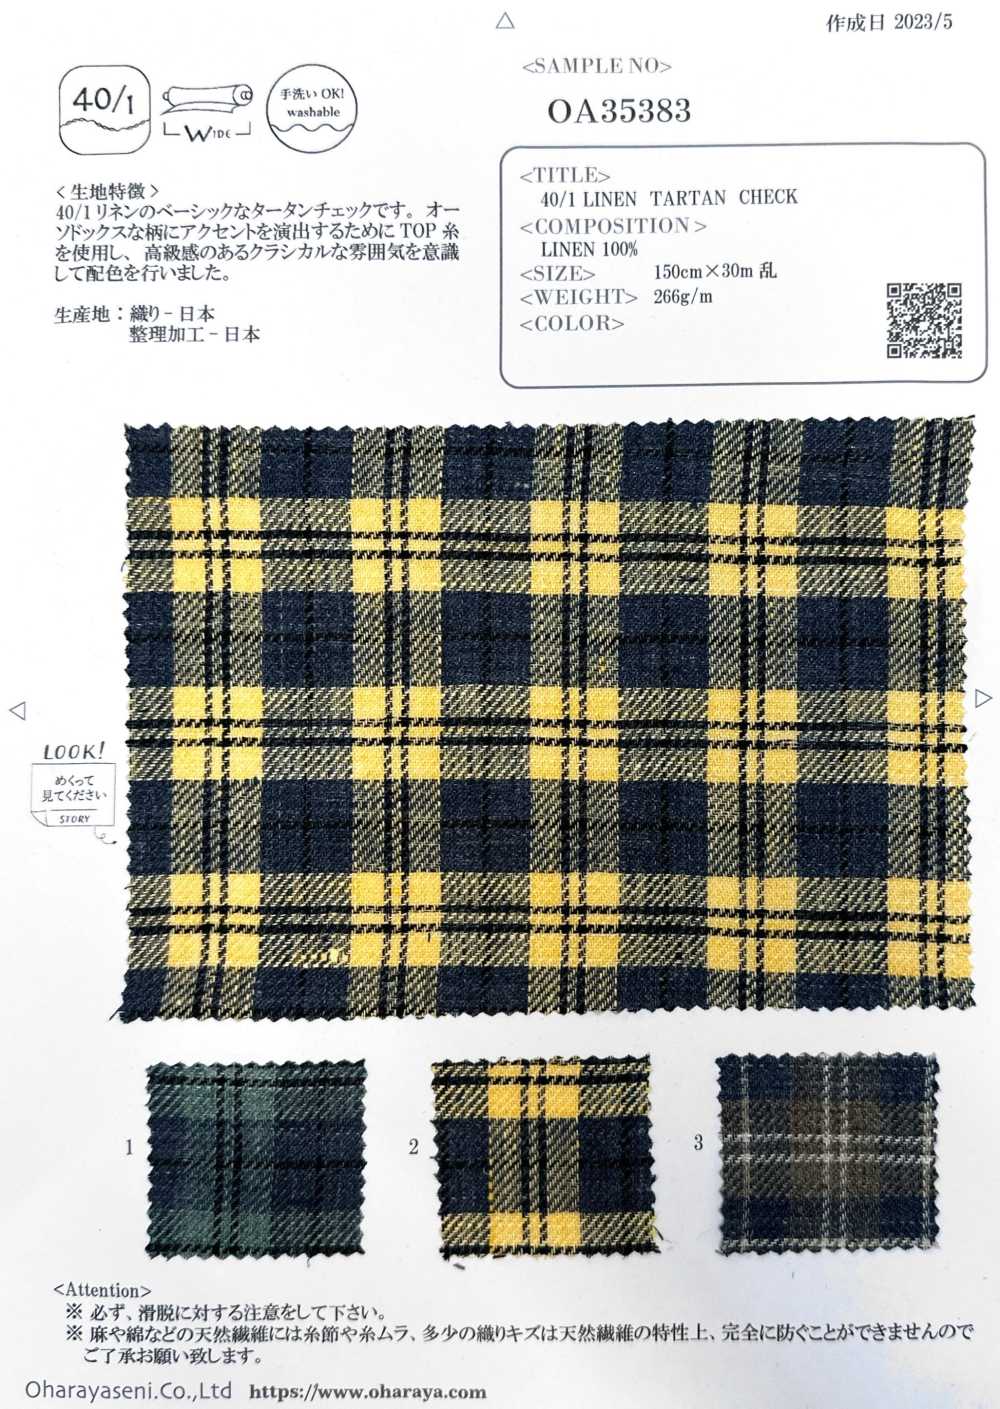 OA35383 VERIFICAÇÃO TARTAN DE LINHO 40/1[Têxtil / Tecido] Oharayaseni